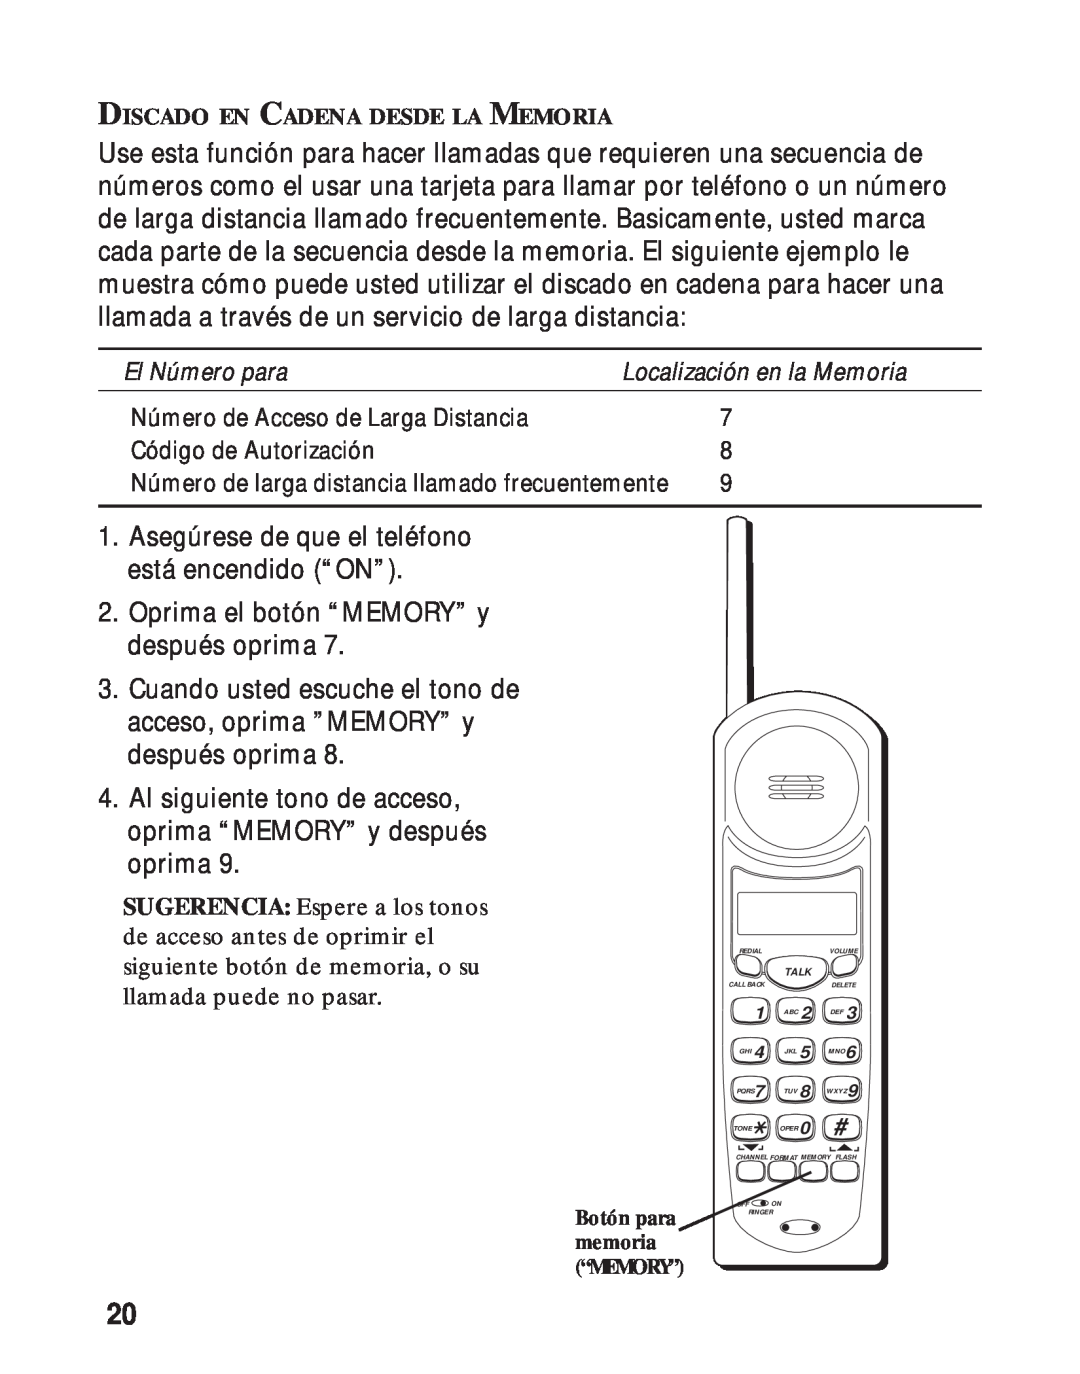 RCA 26730 manual Asegúrese de que el teléfono está encendido “ON” 